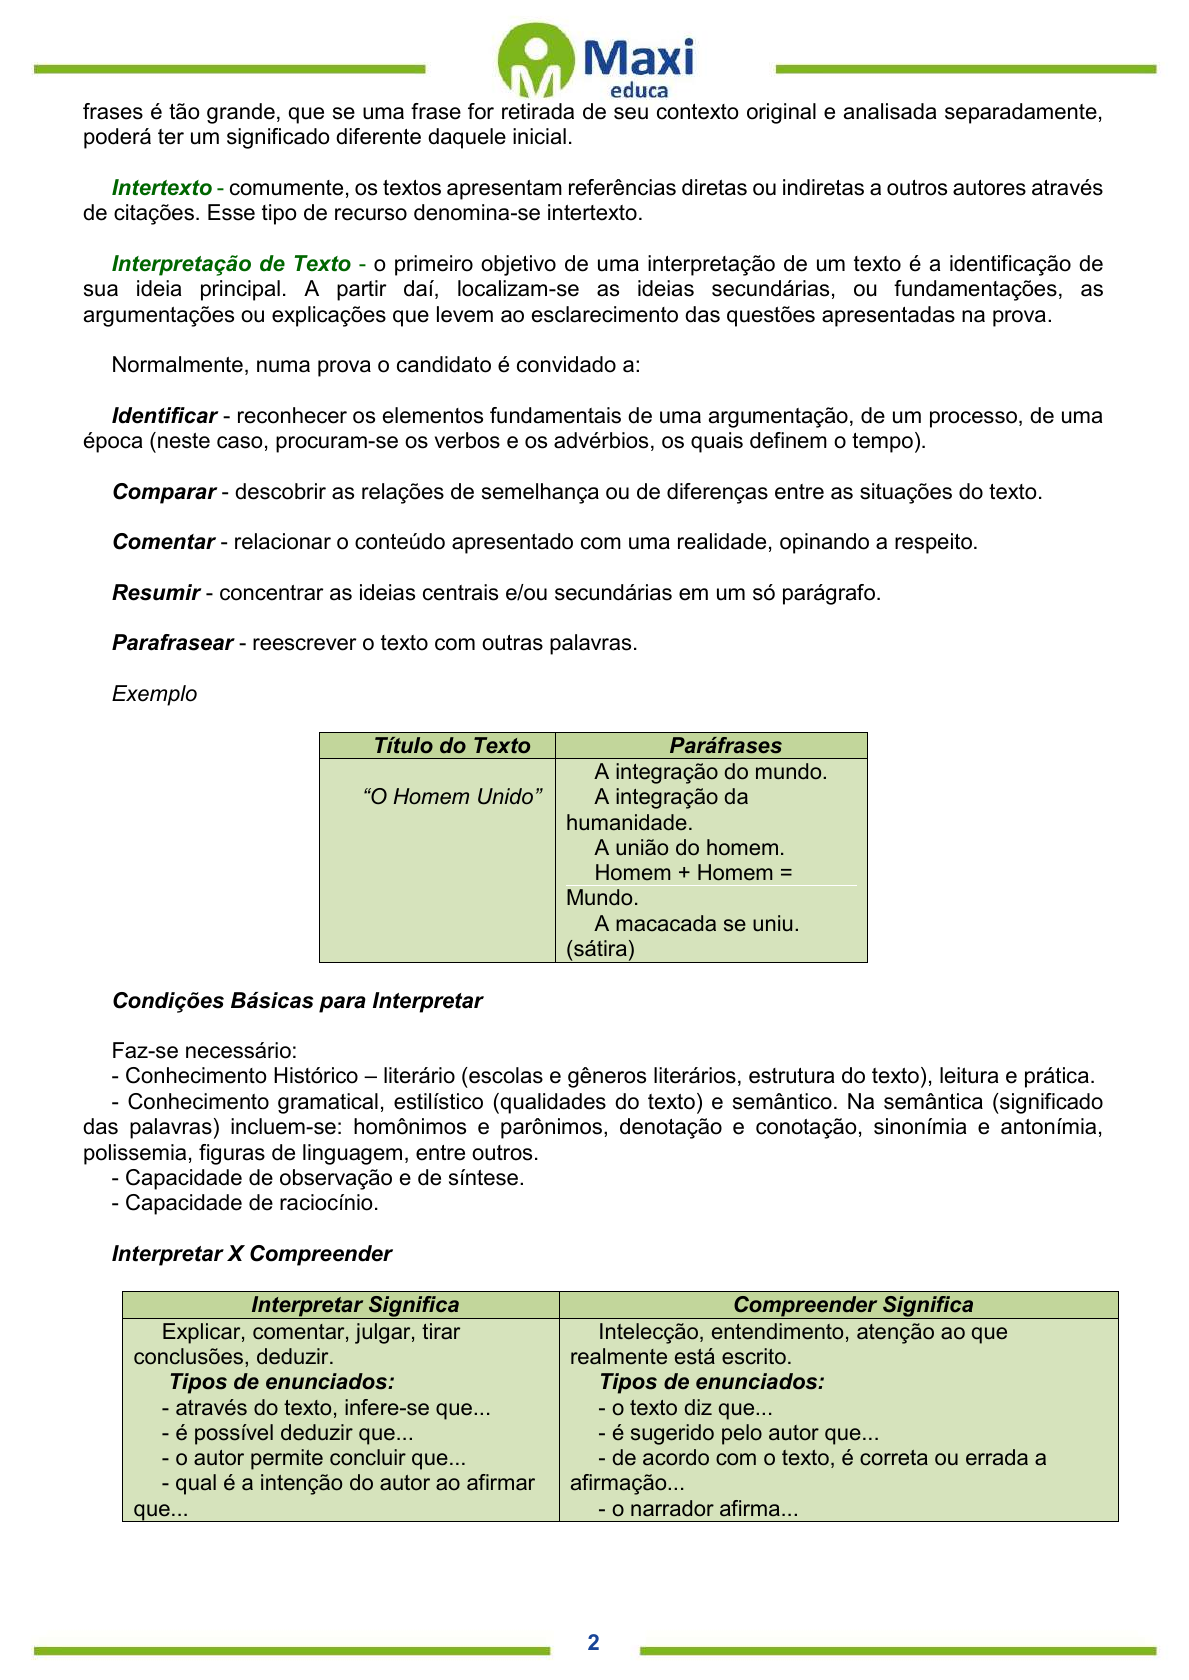 Portal del Profesor - UCA - Pronomes relativos e a coesão textual